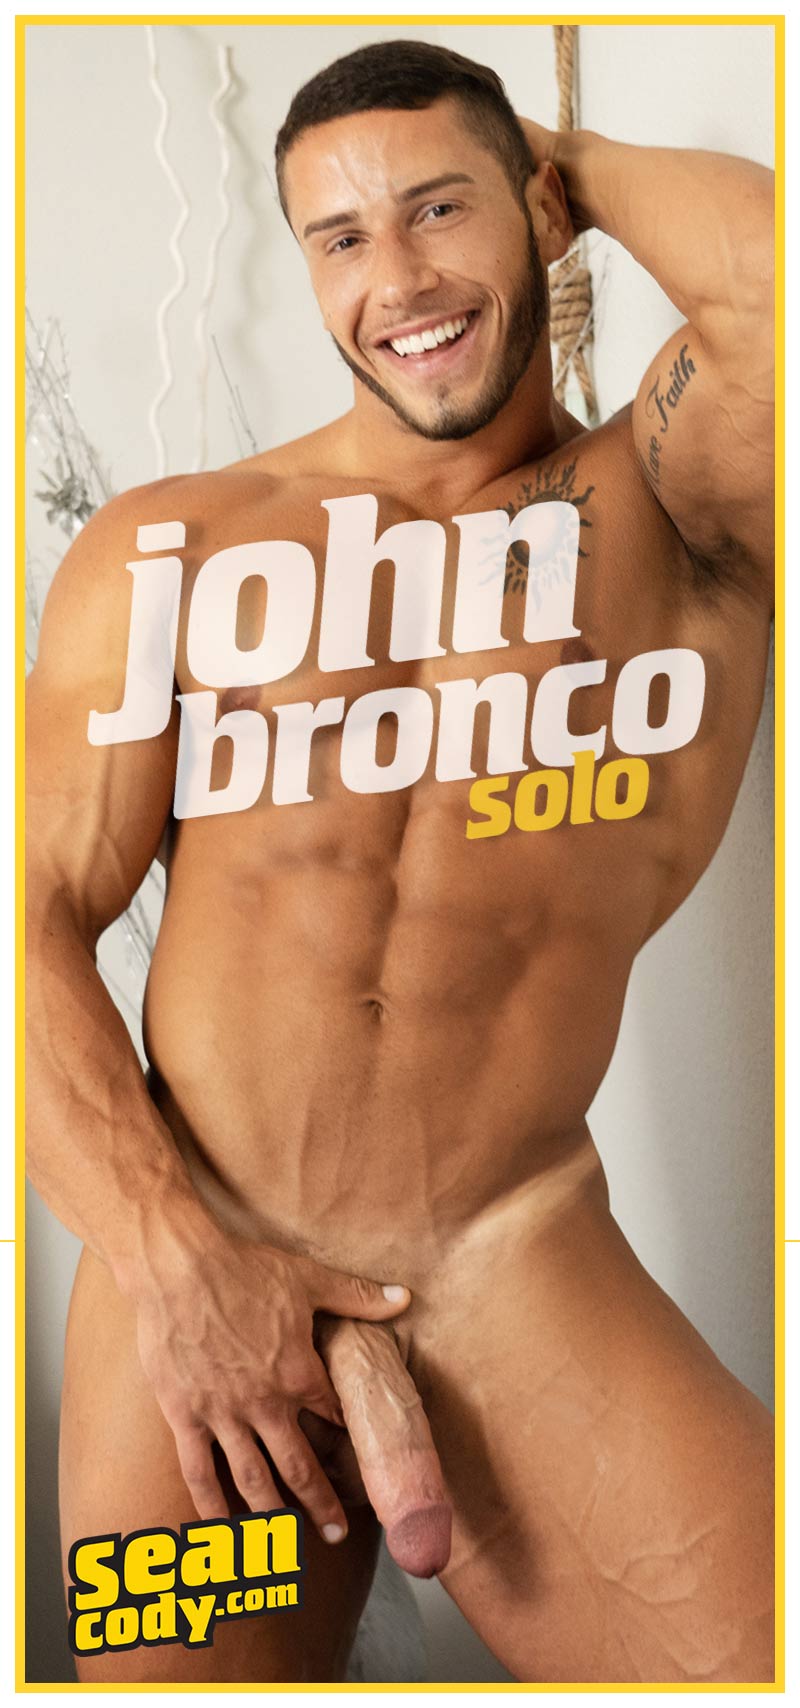 Sean Cody Bodybuilder John Bronco Jerks Off Solo picture photo